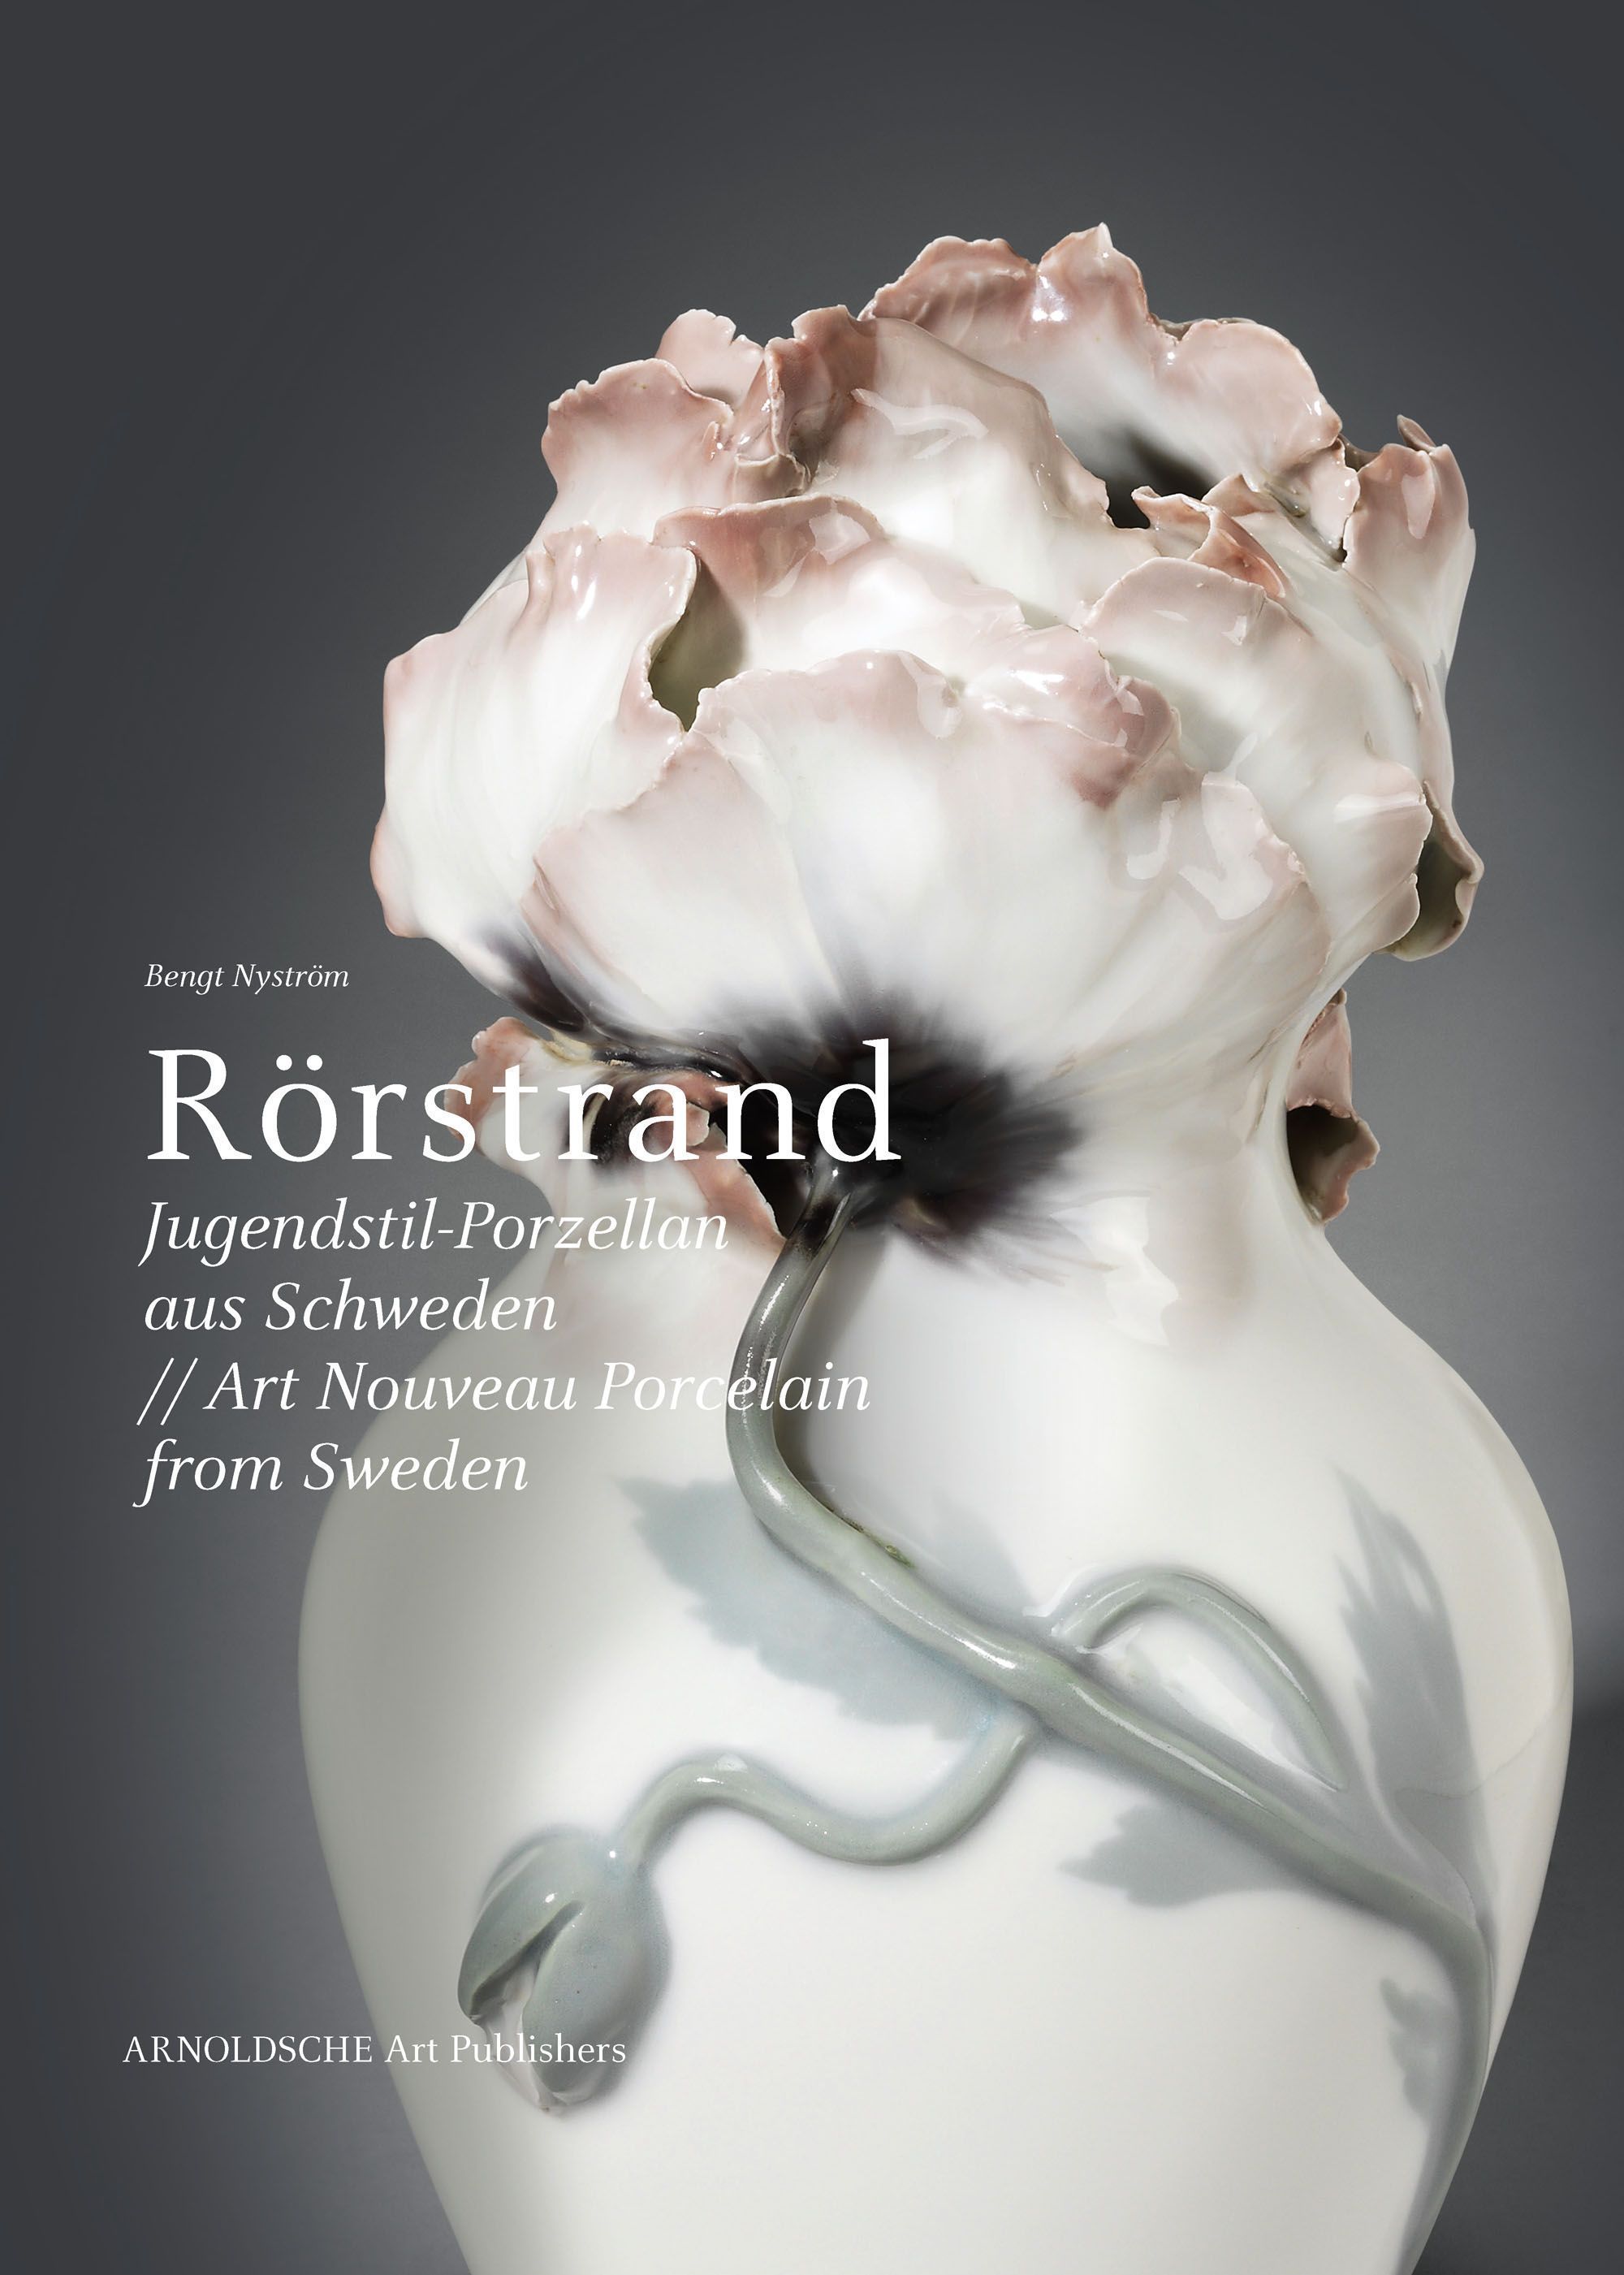 Rörstrand. Porzellan aus Schweden (Arnoldsche Art Publisher).